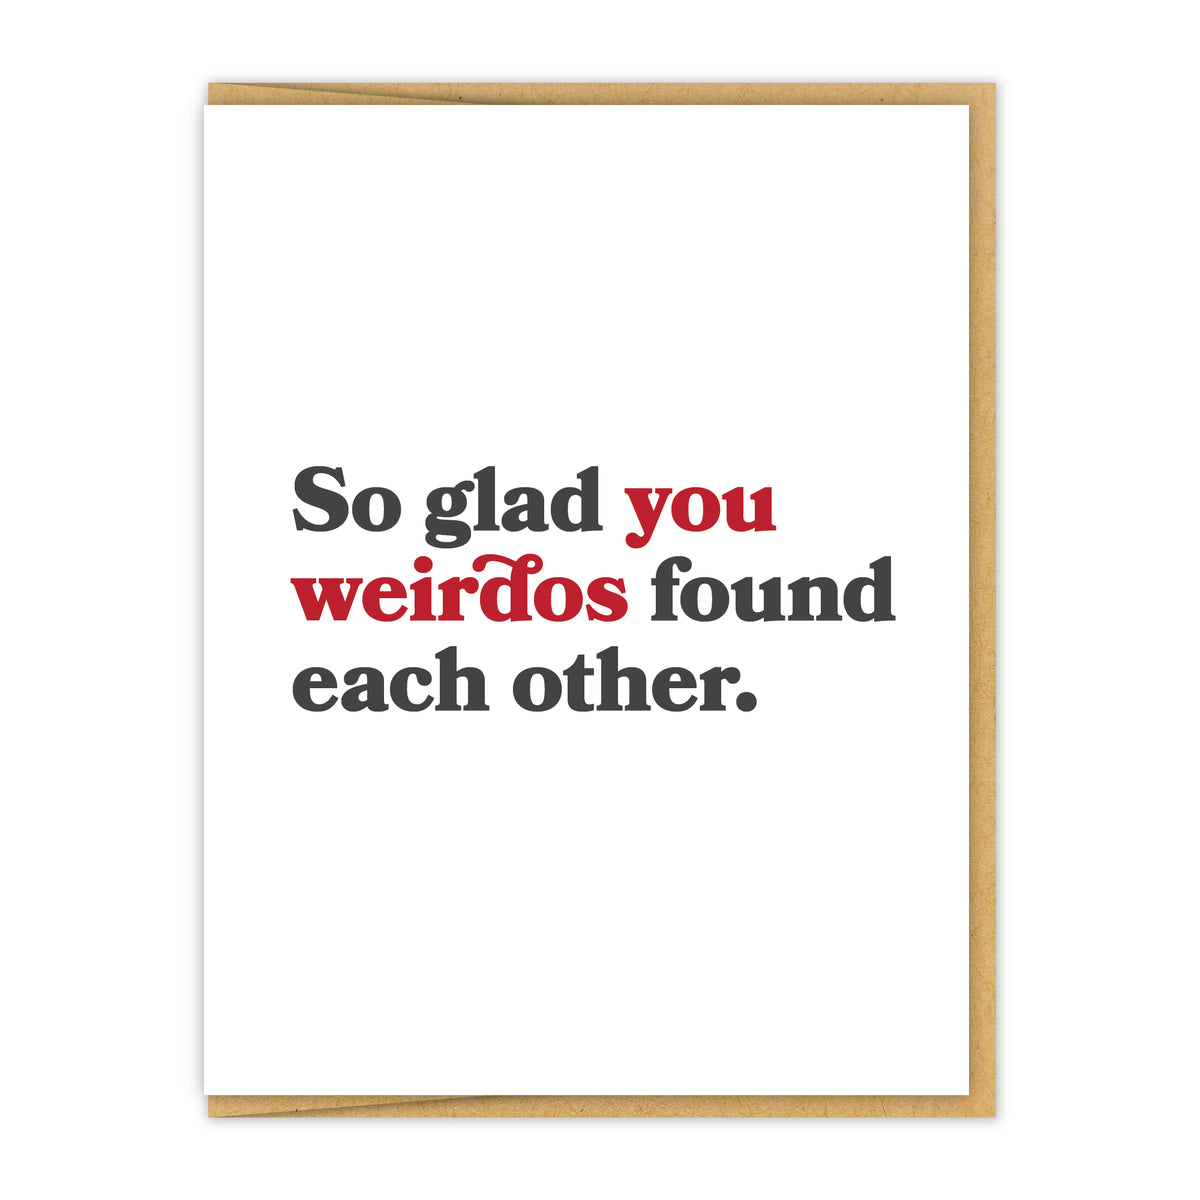 Glad you weirdos found each other